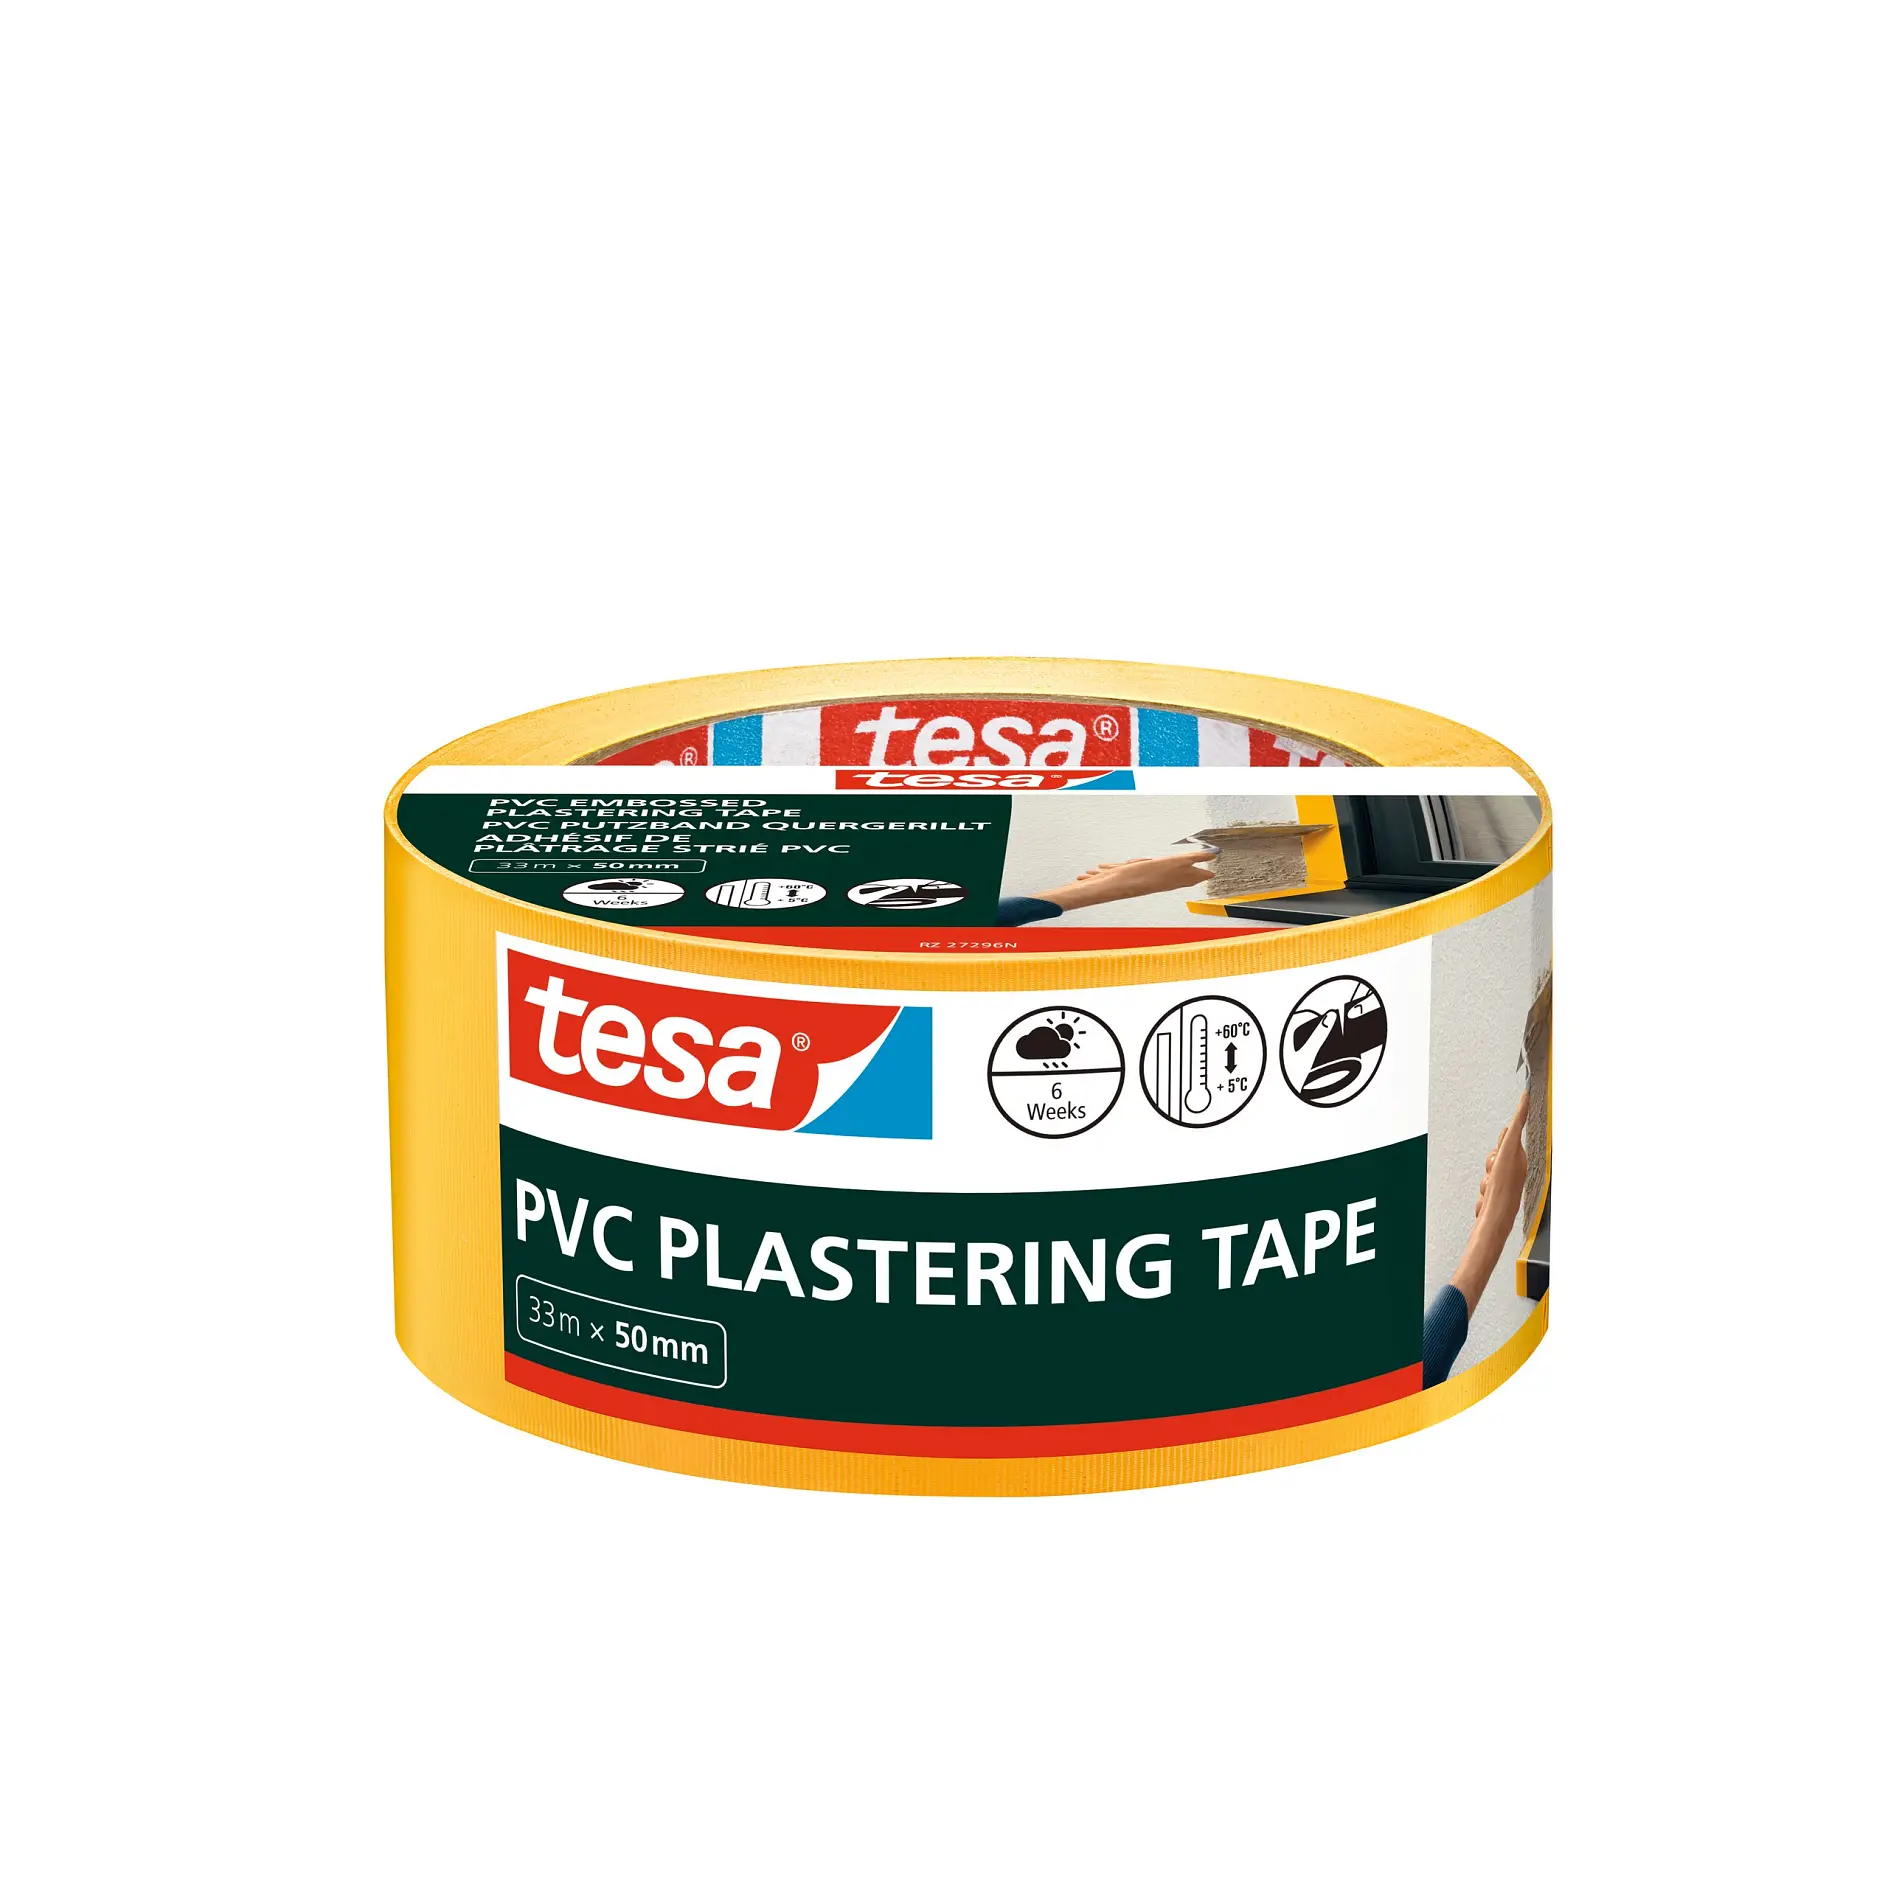 [en-en] tesa Professional&nbsp;Plastering Tape, PVC yellow embossed, 33m x 50mm